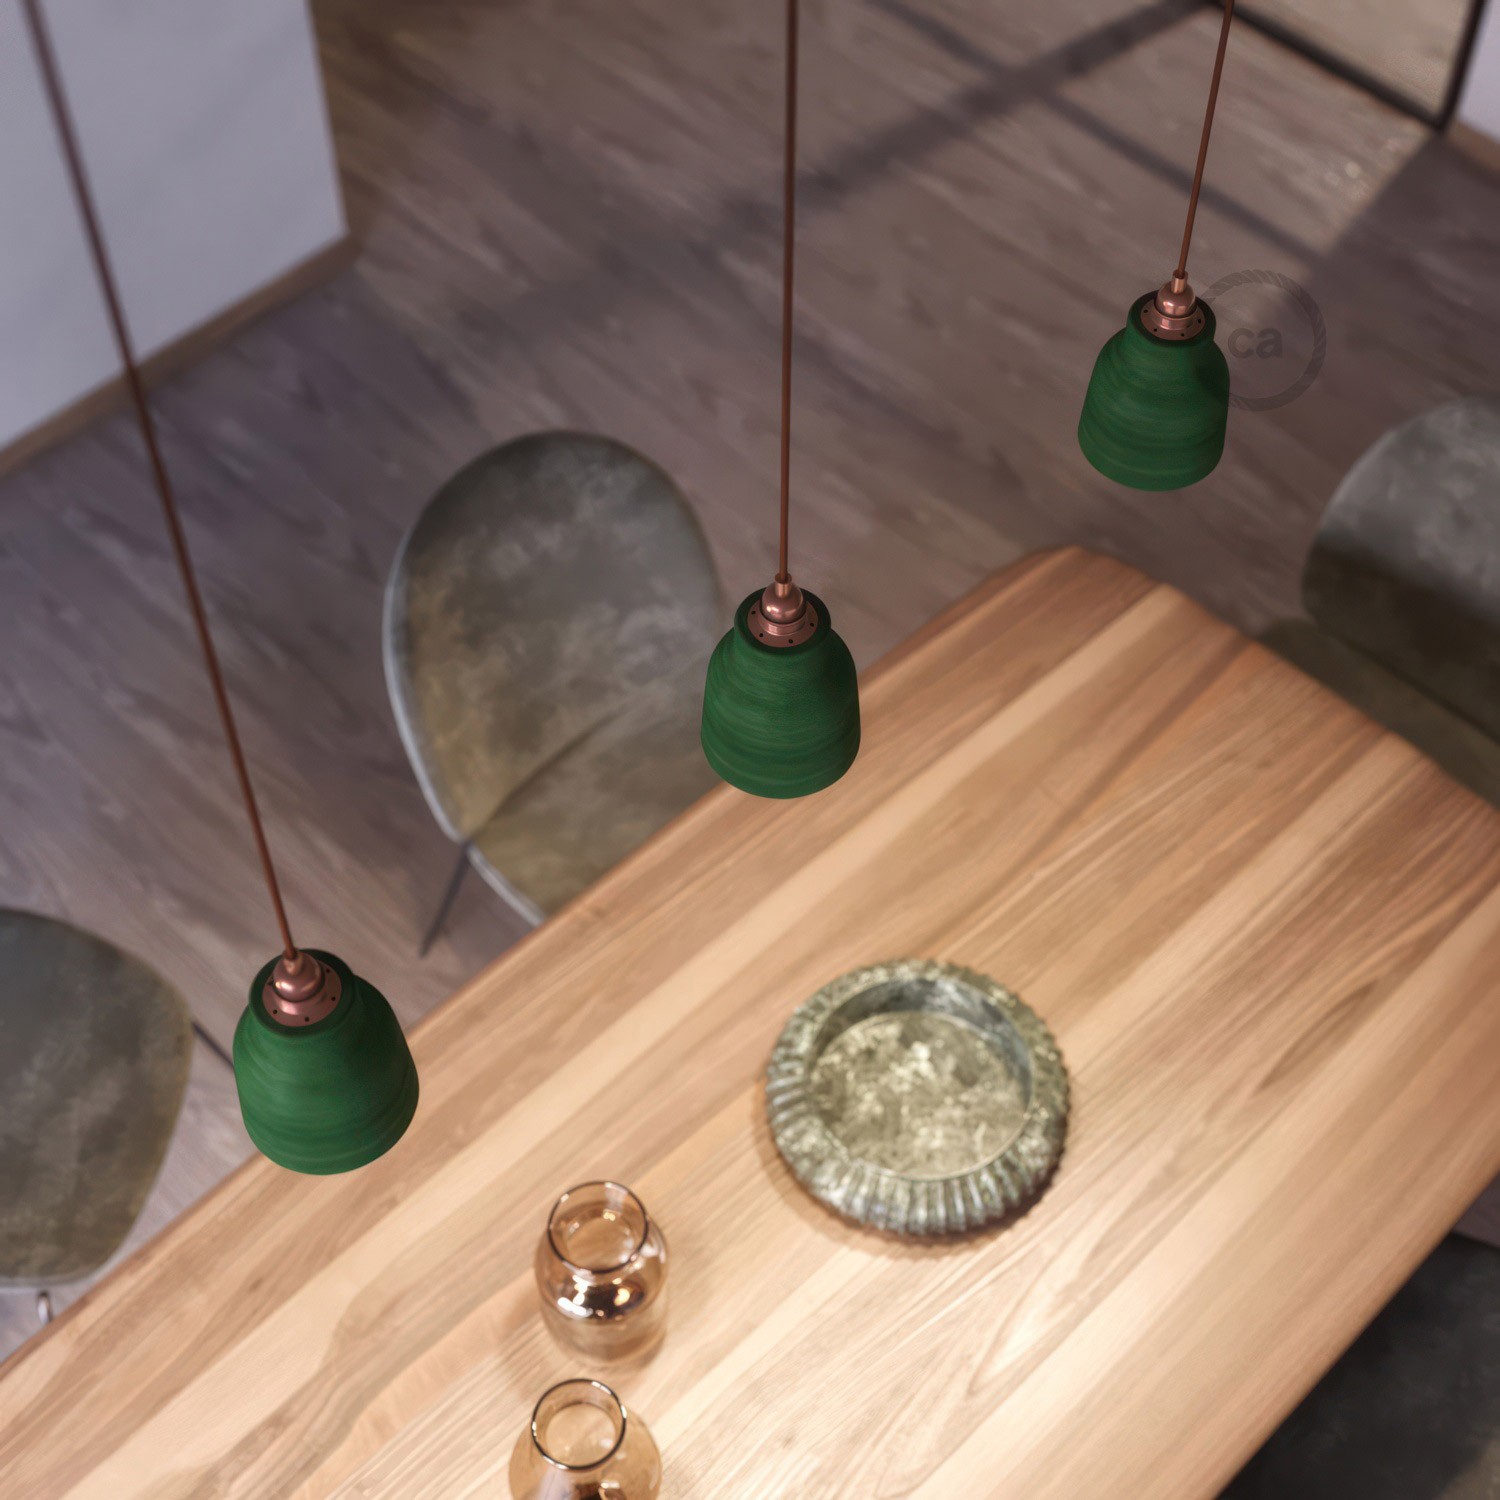 Pendelleuchte inklusive Textilkabel, vasenförmigem Lampenschirm aus Keramik und Metall-Zubehör - Made in Italy